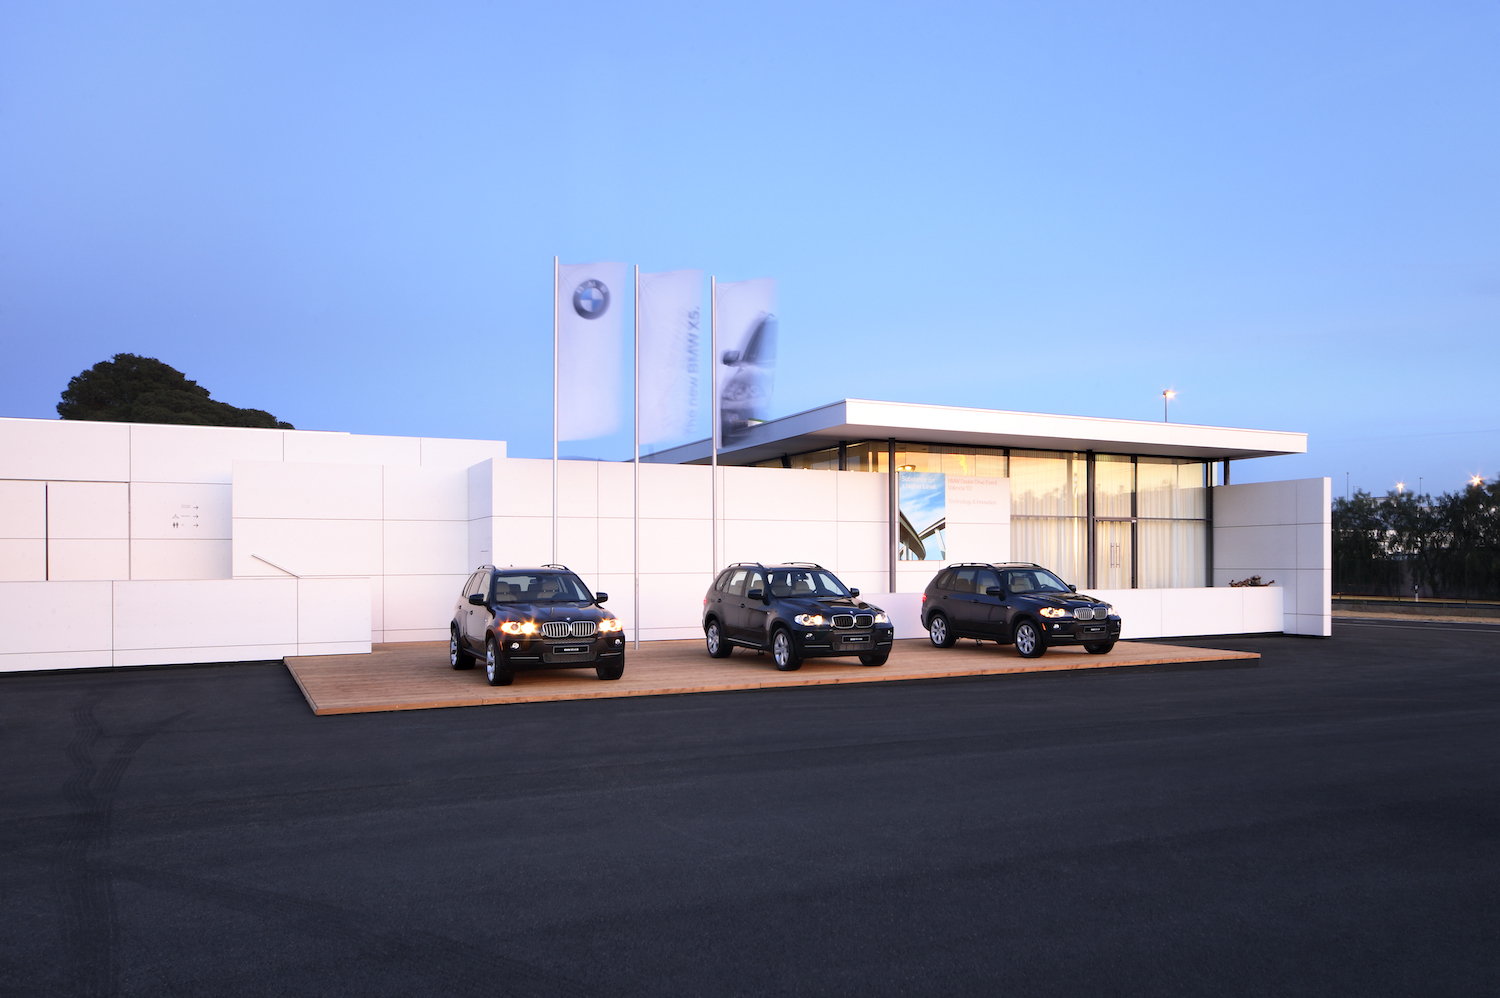 Drei BMW Autos sind vor einer weissen vorgehängte hinterlueftete Fassade geparkt